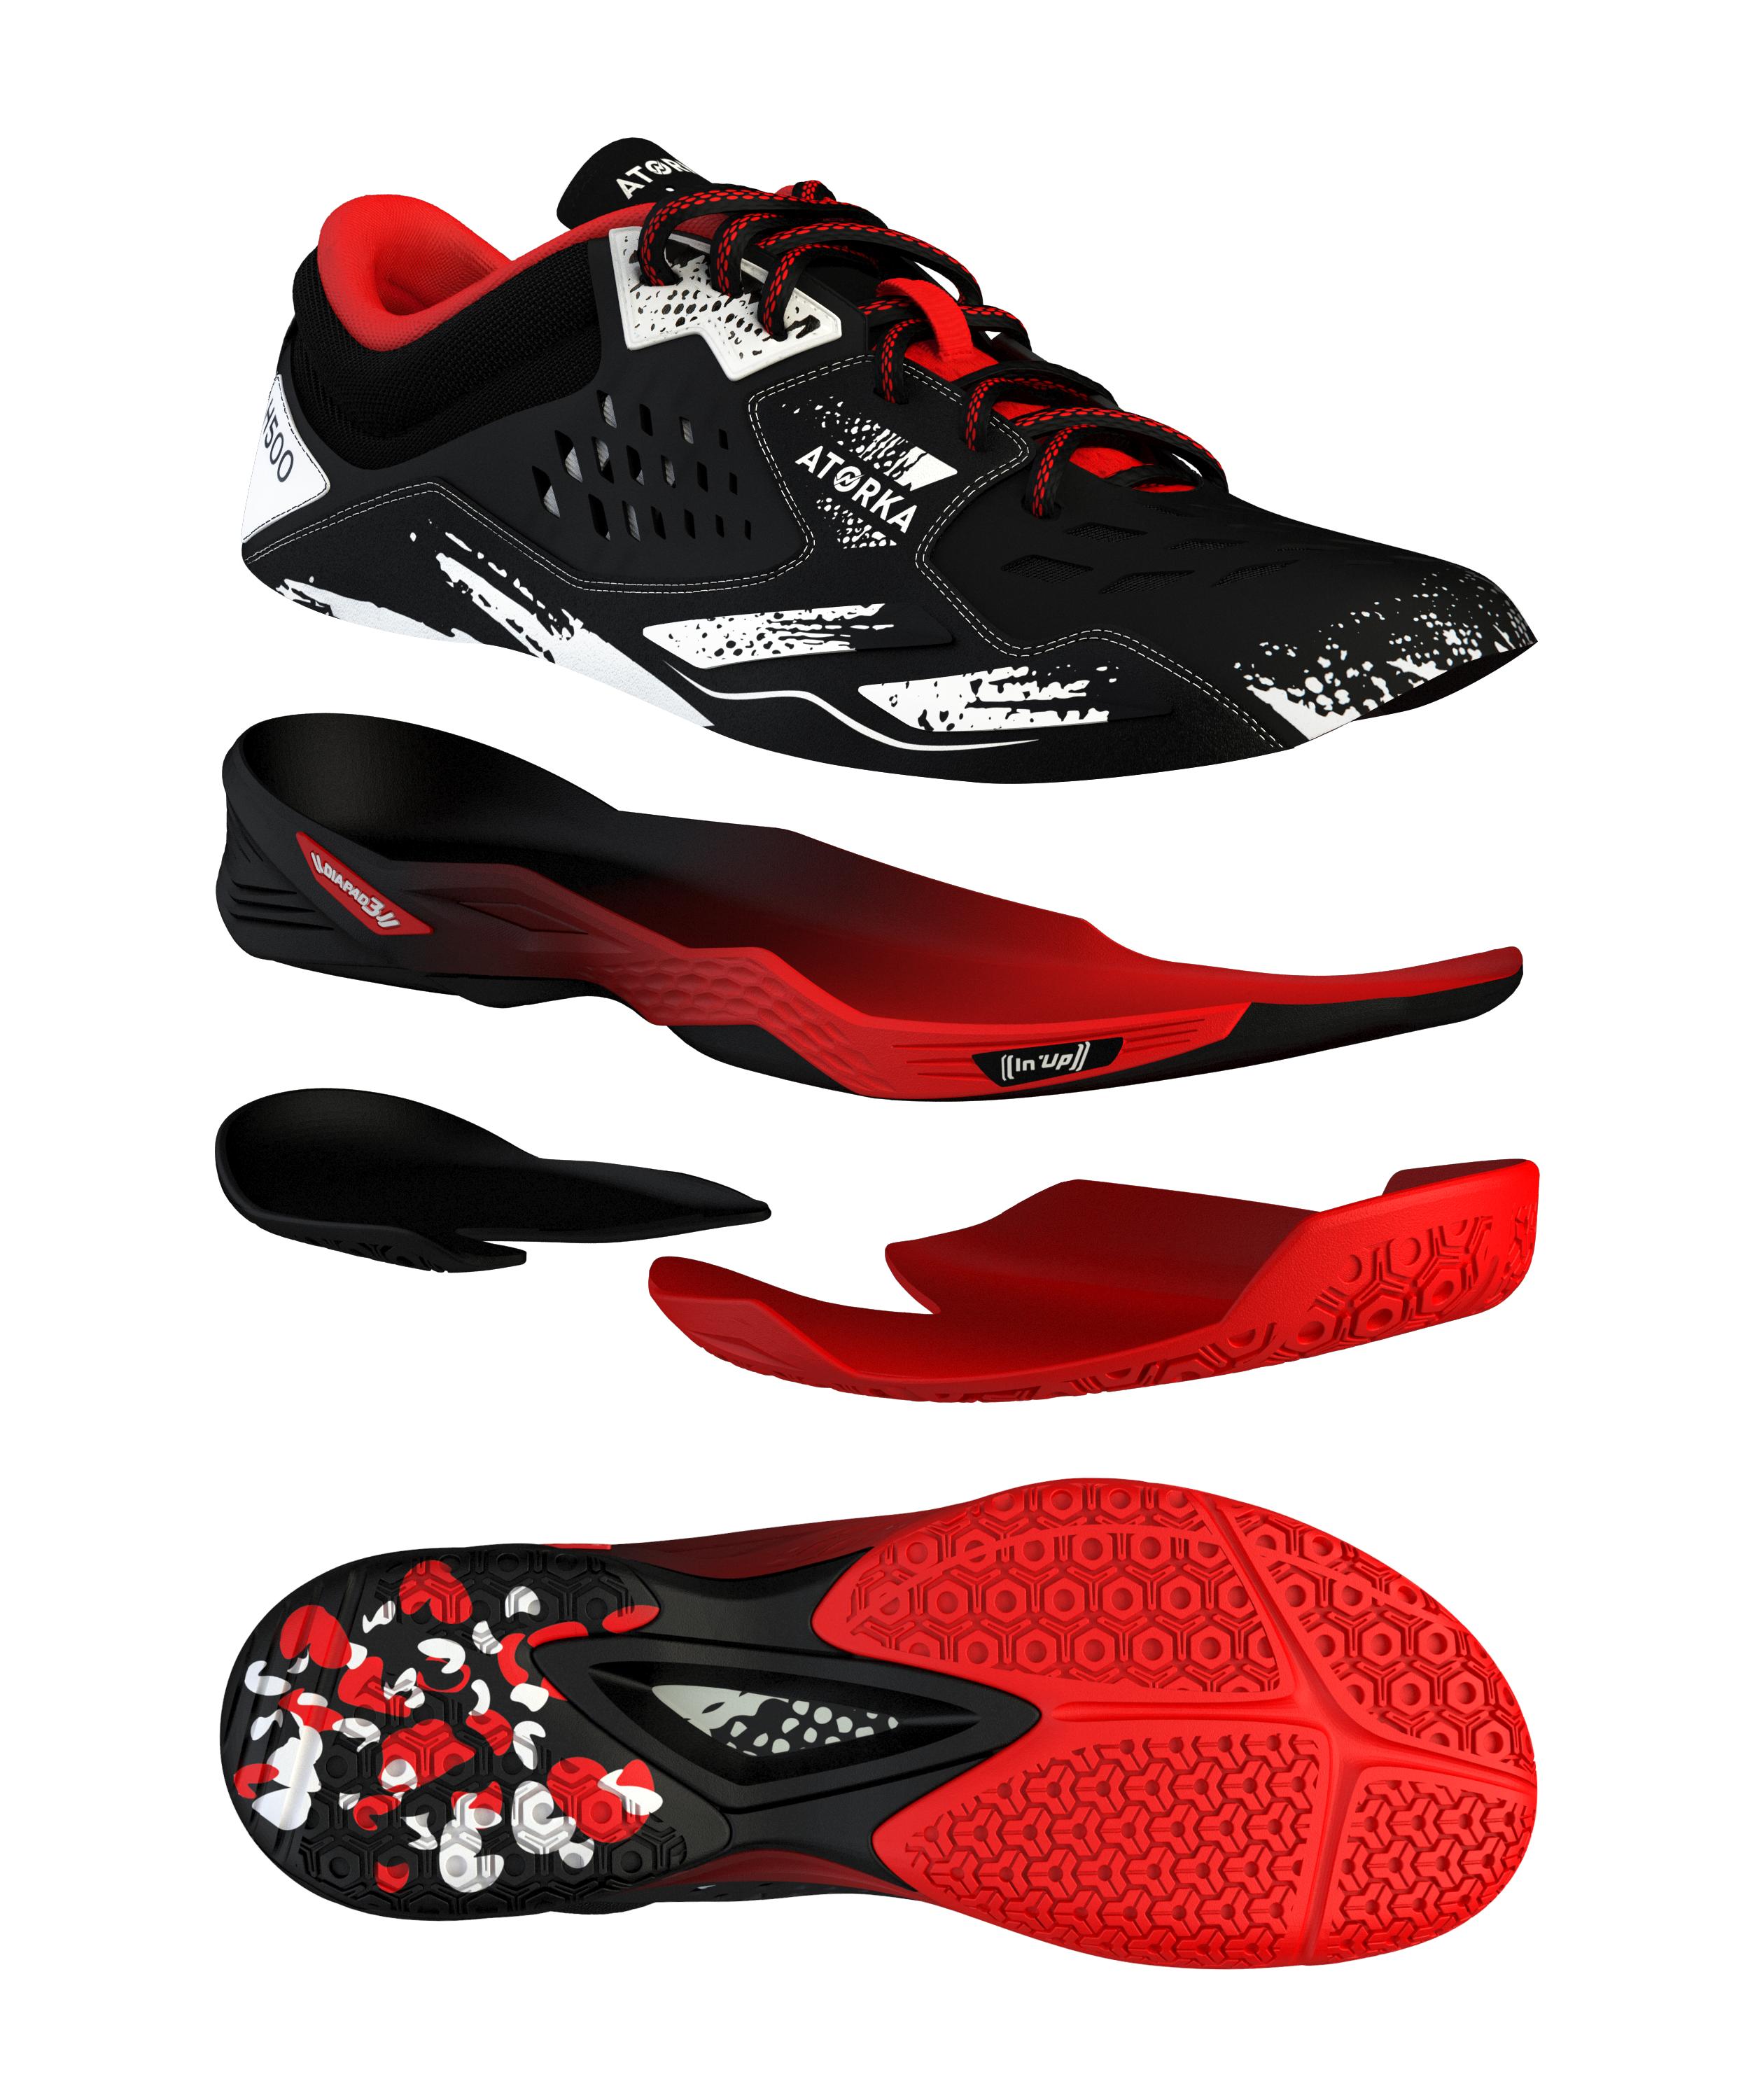 H500 Handball Shoes - Black/Red/White 2/9